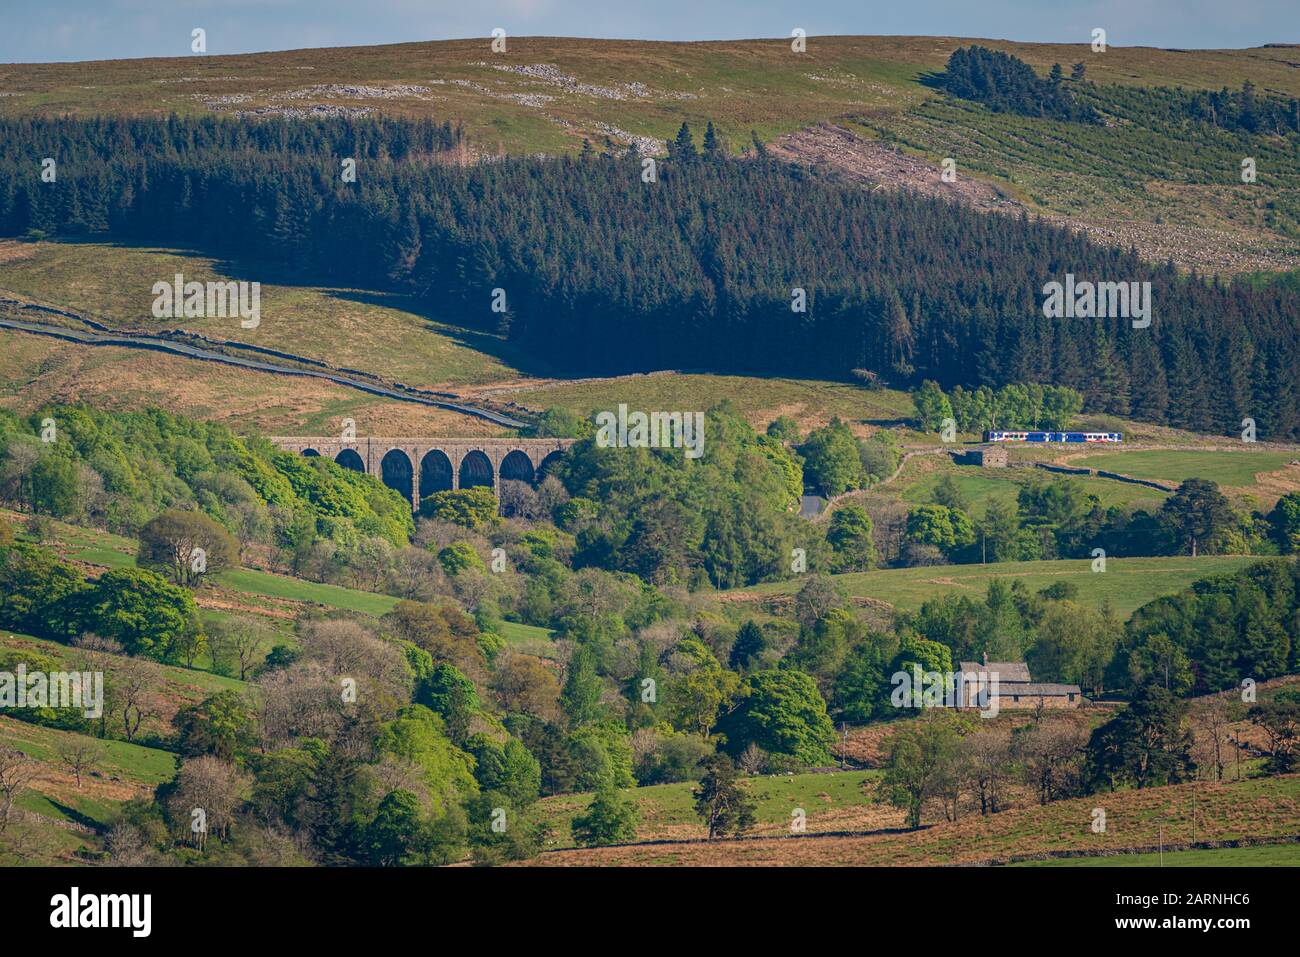 Cerca de Cowgill, Cumbria, Inglaterra, Reino Unido - 16 de mayo de 2019: Un tren que pasa por el viaducto Dent Head en la línea de ferrocarril Settle-Carlisle Foto de stock